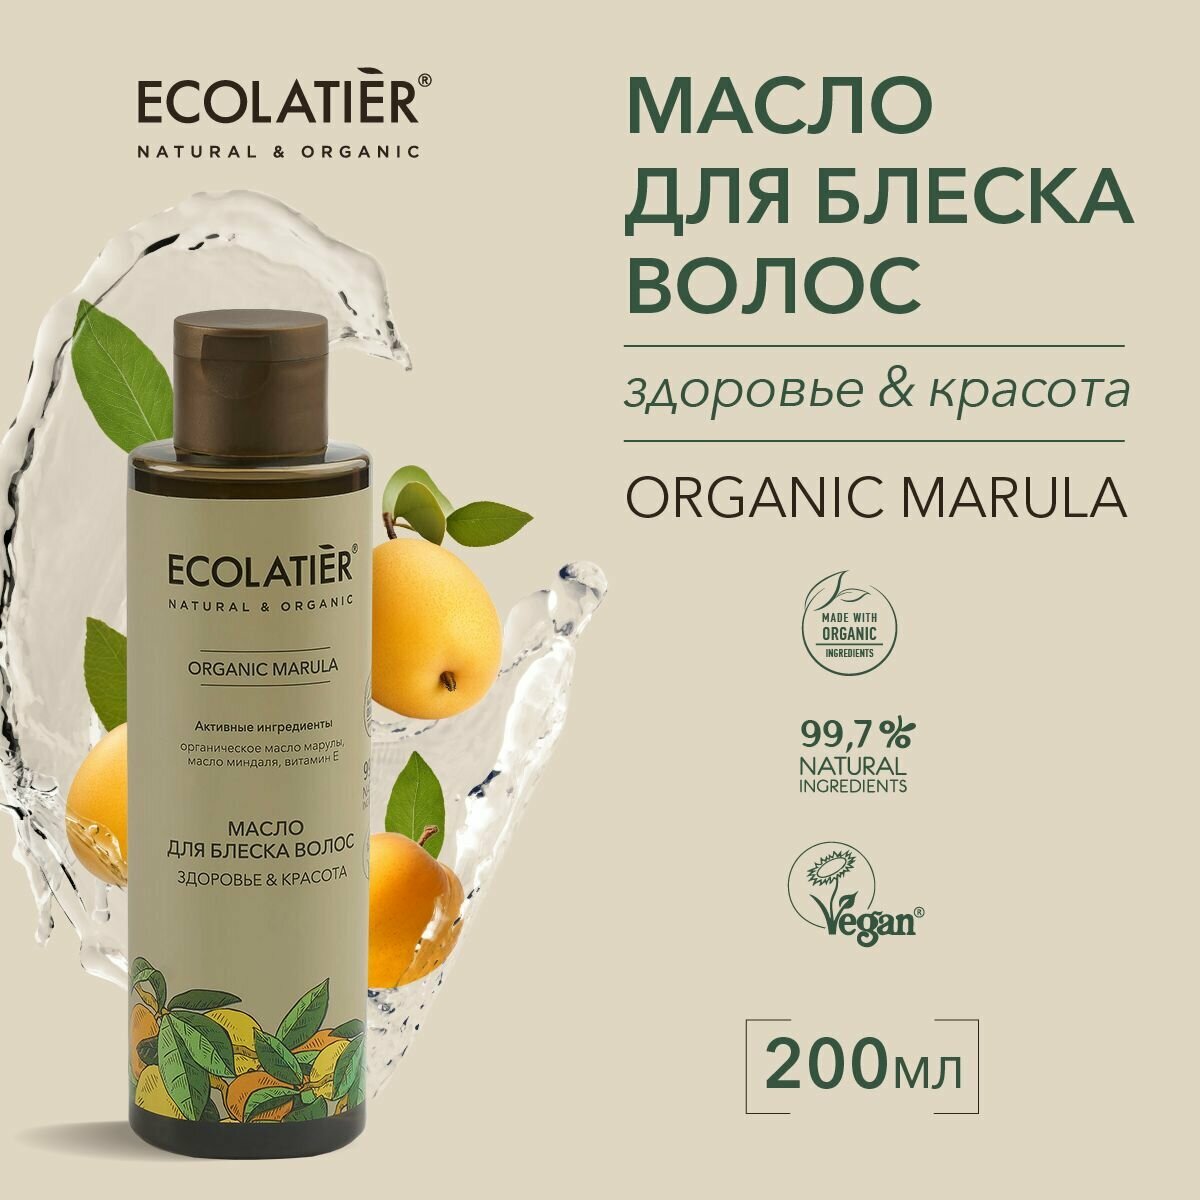 ECOLATIER / Масло для блеска волос Здоровье & Красота Серия ORGANIC MARULA, 200 мл